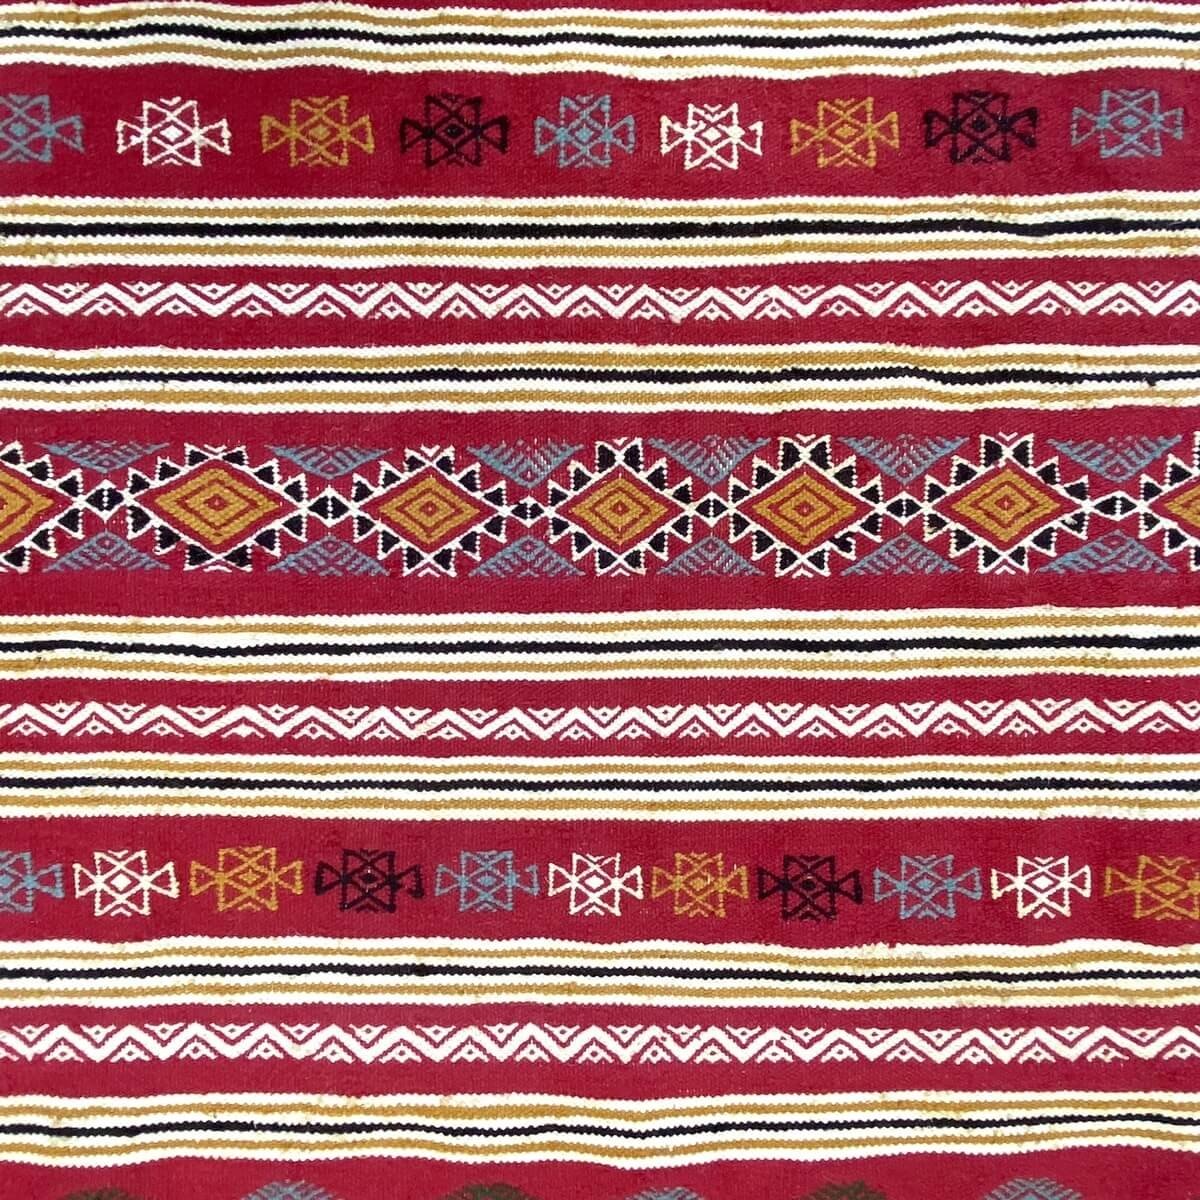 tappeto berbero Tappeto Kilim Ifta 116x205 Rosso/Arancione (Fatto a mano, Lana, Tunisia) Tappeto kilim tunisino, in stile marocc